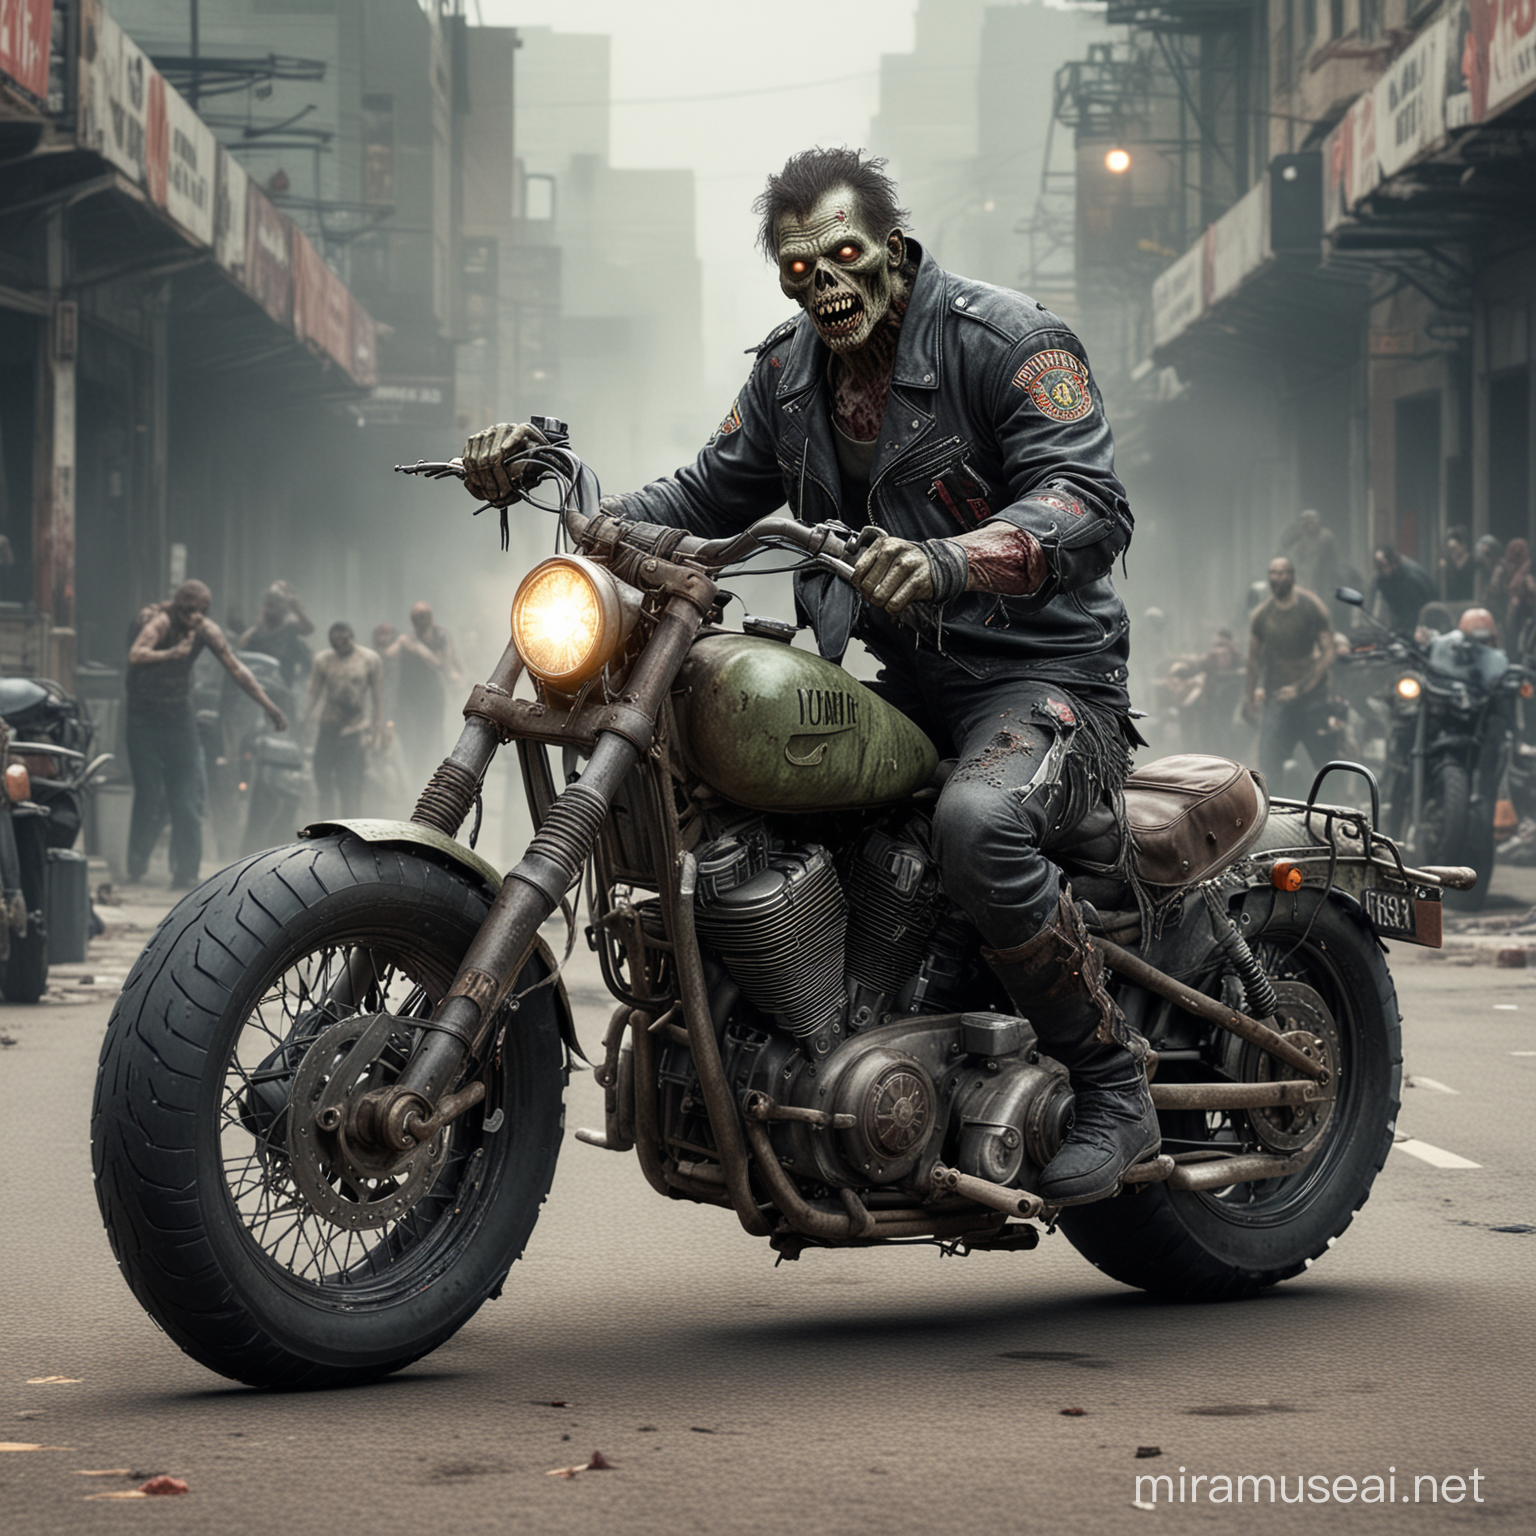 Motorcycle MC zombie